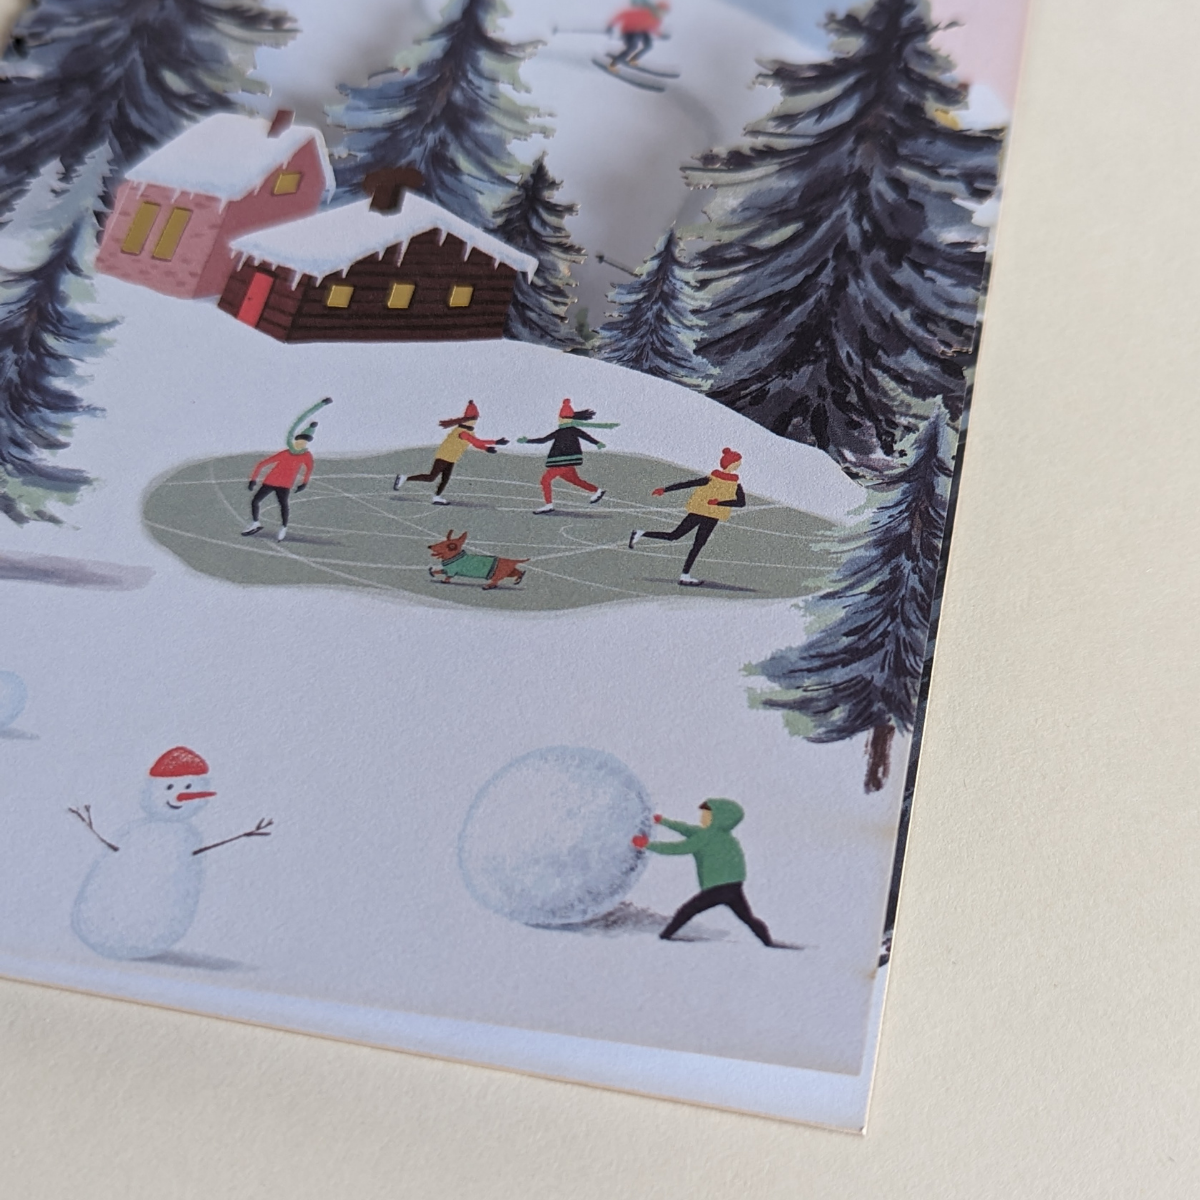 Carte d'hiver découpée au laser.Des chalets dans la montagne, une forêt de sapins, des personnes faisant du patinage ont été représentées sur cette très belle carte de voeux.